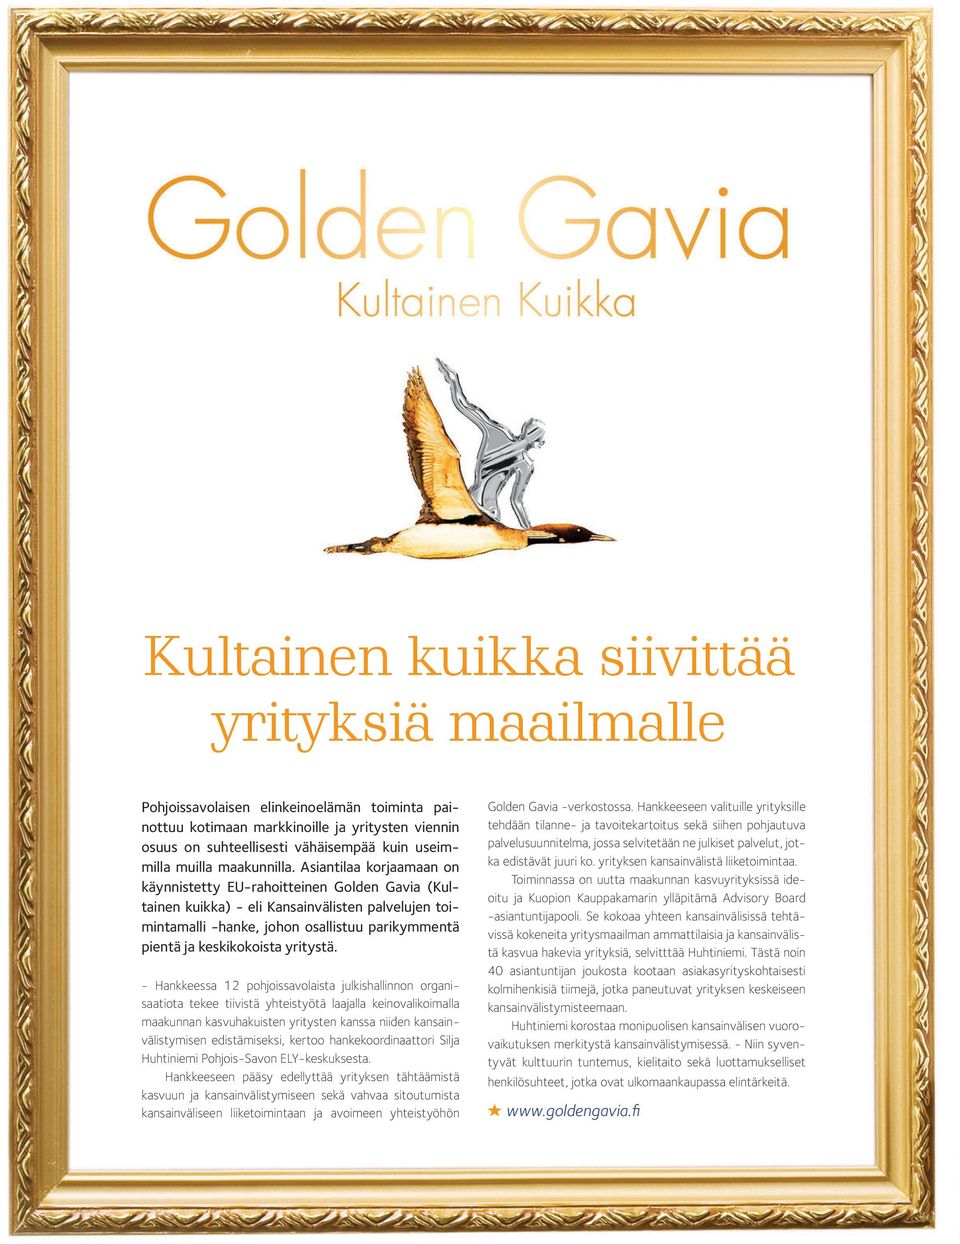 Asiantilaa korjaamaan on käynnistetty EU-rahoitteinen Golden Gavia (Kultainen kuikka) - eli Kansainvälisten palvelujen toimintamalli -hanke, johon osallistuu parikymmentä pientä ja keskikokoista